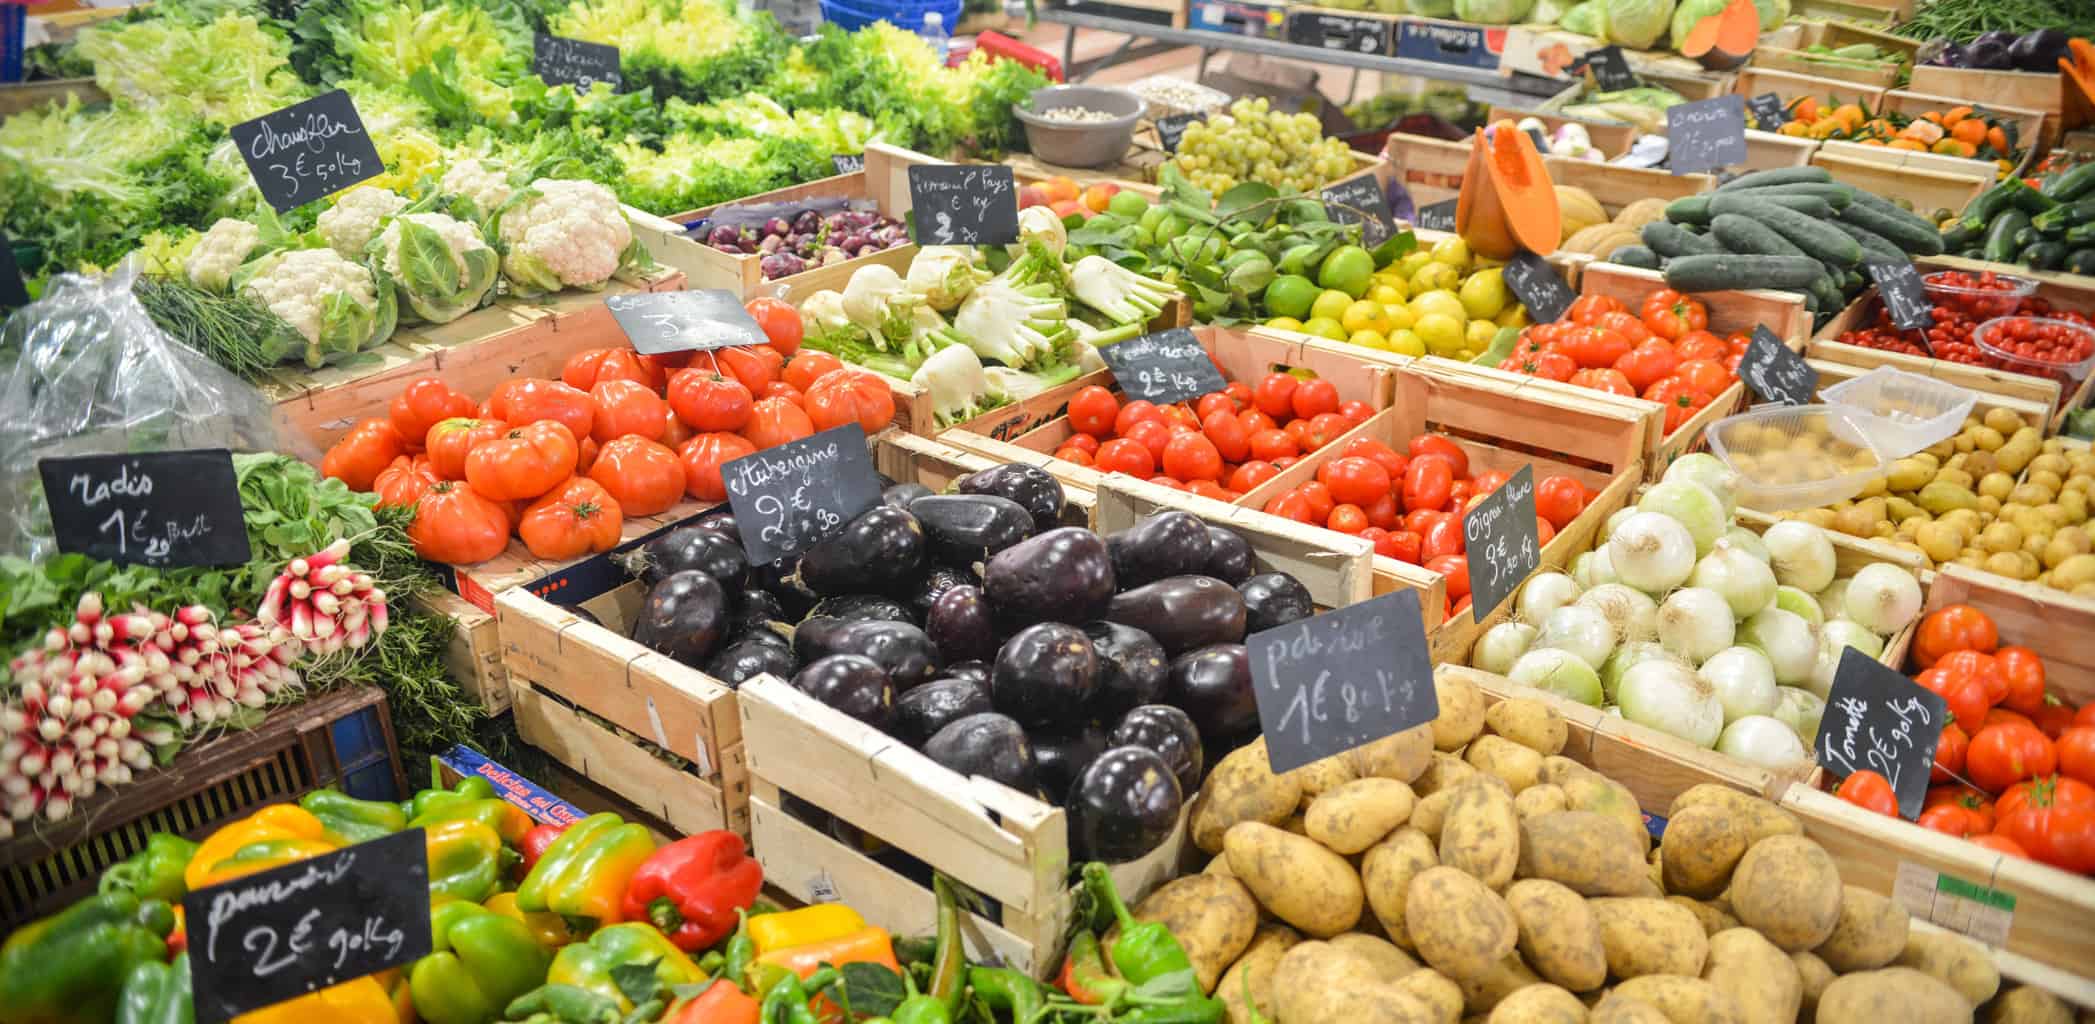 produce veg market